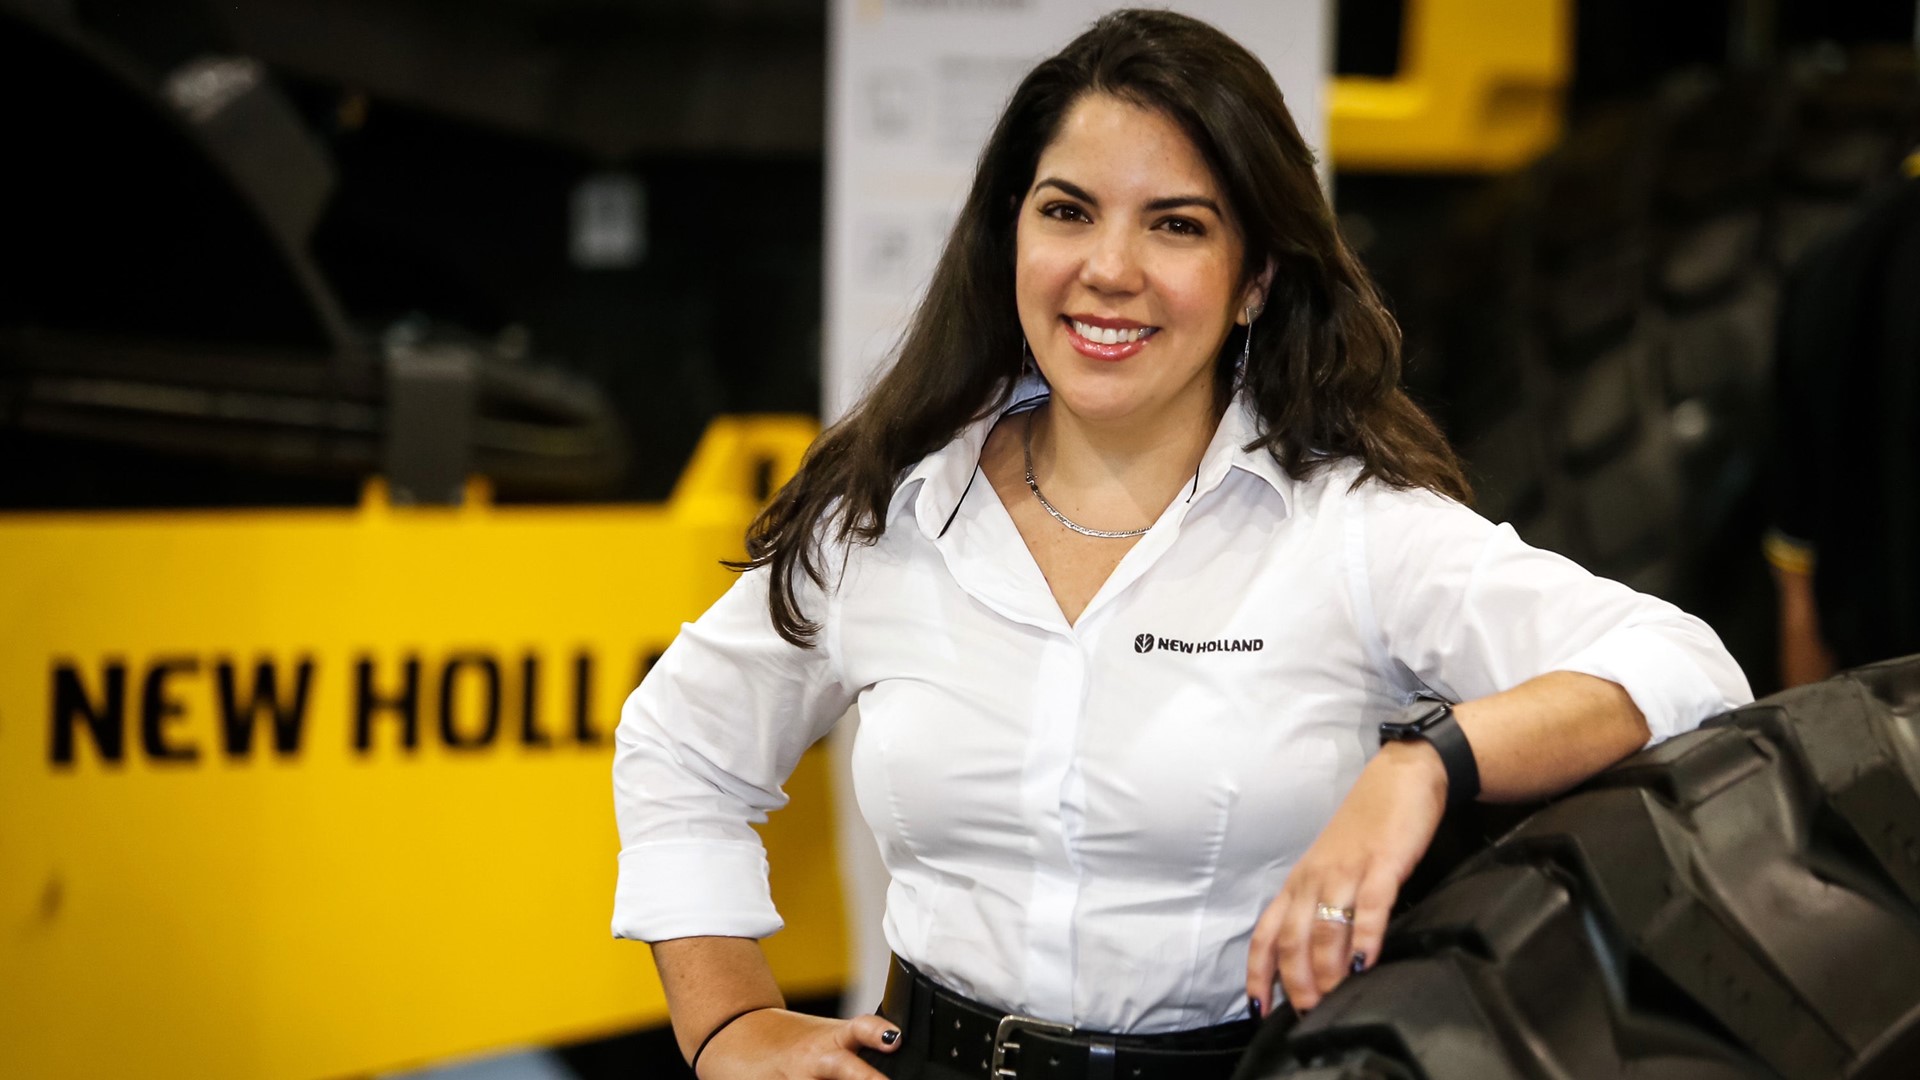 Mariana Bicalho a nova Gerente de Marketing para a Am rica Latina da New Holland Construction